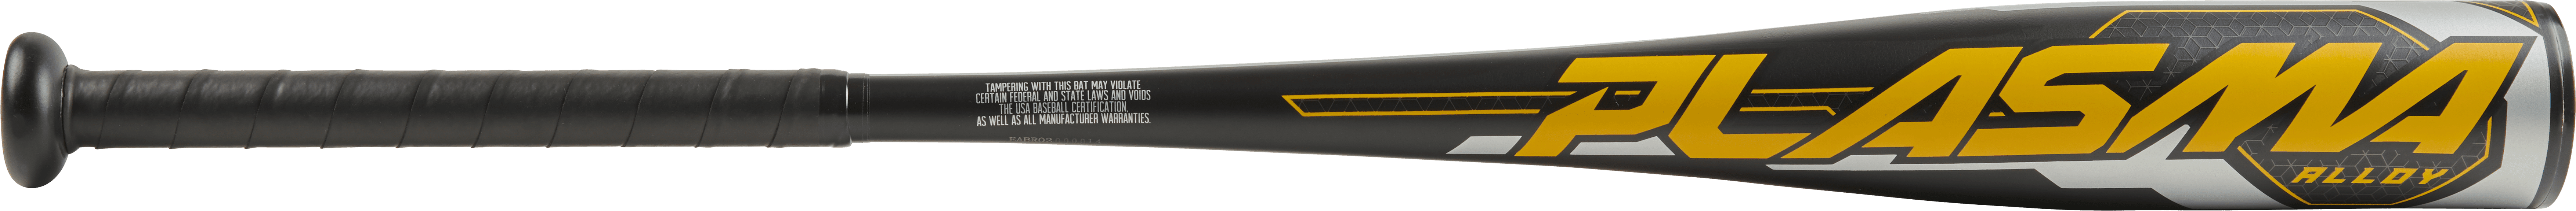 Rawlings Plasma USA Youth Baseball Bat, 30 inch (-9 Drop Weight)